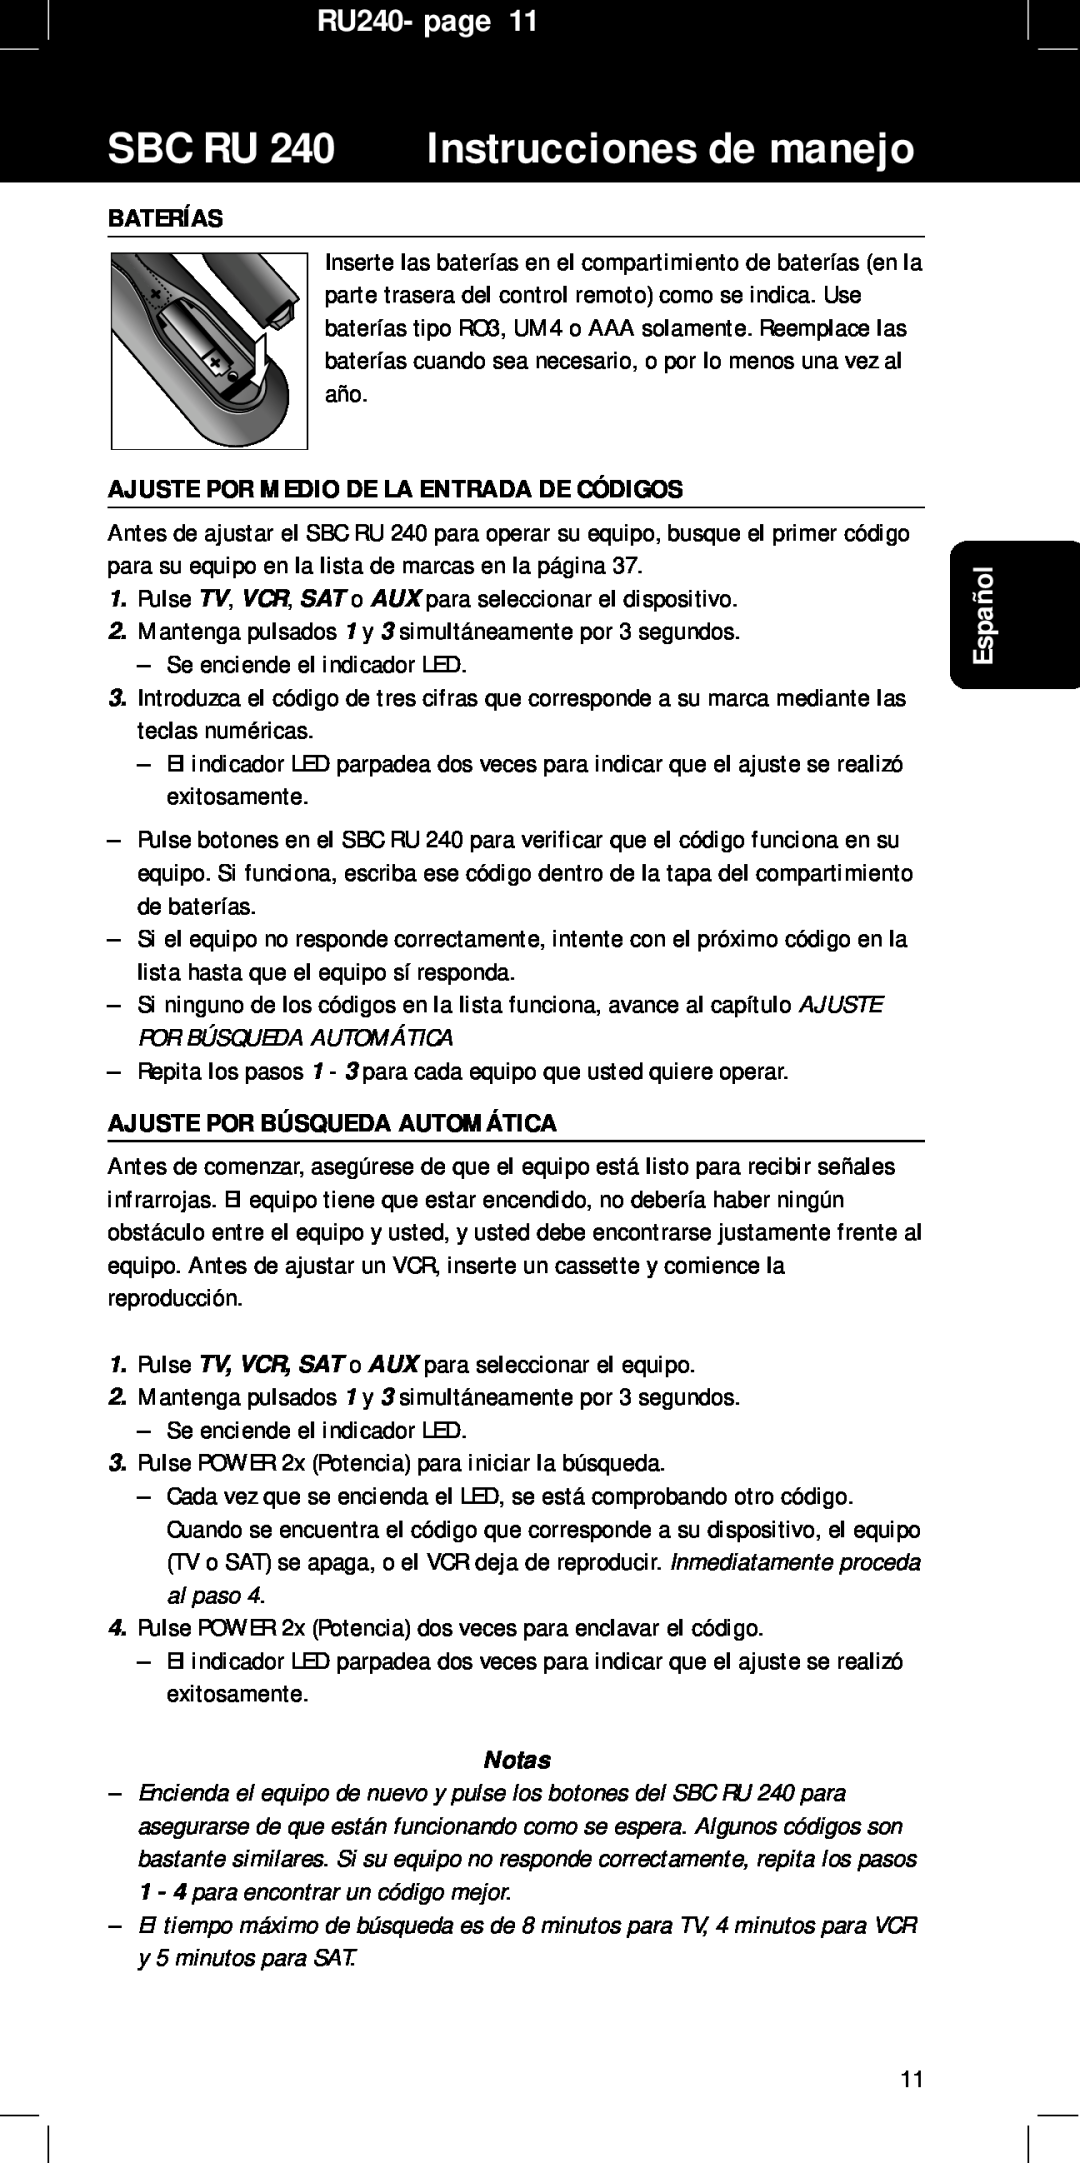 Philips manual Baterías, Ajuste Por Medio De La Entrada De Códigos, Ajuste Por Búsqueda Automática, RU240- page, Español 